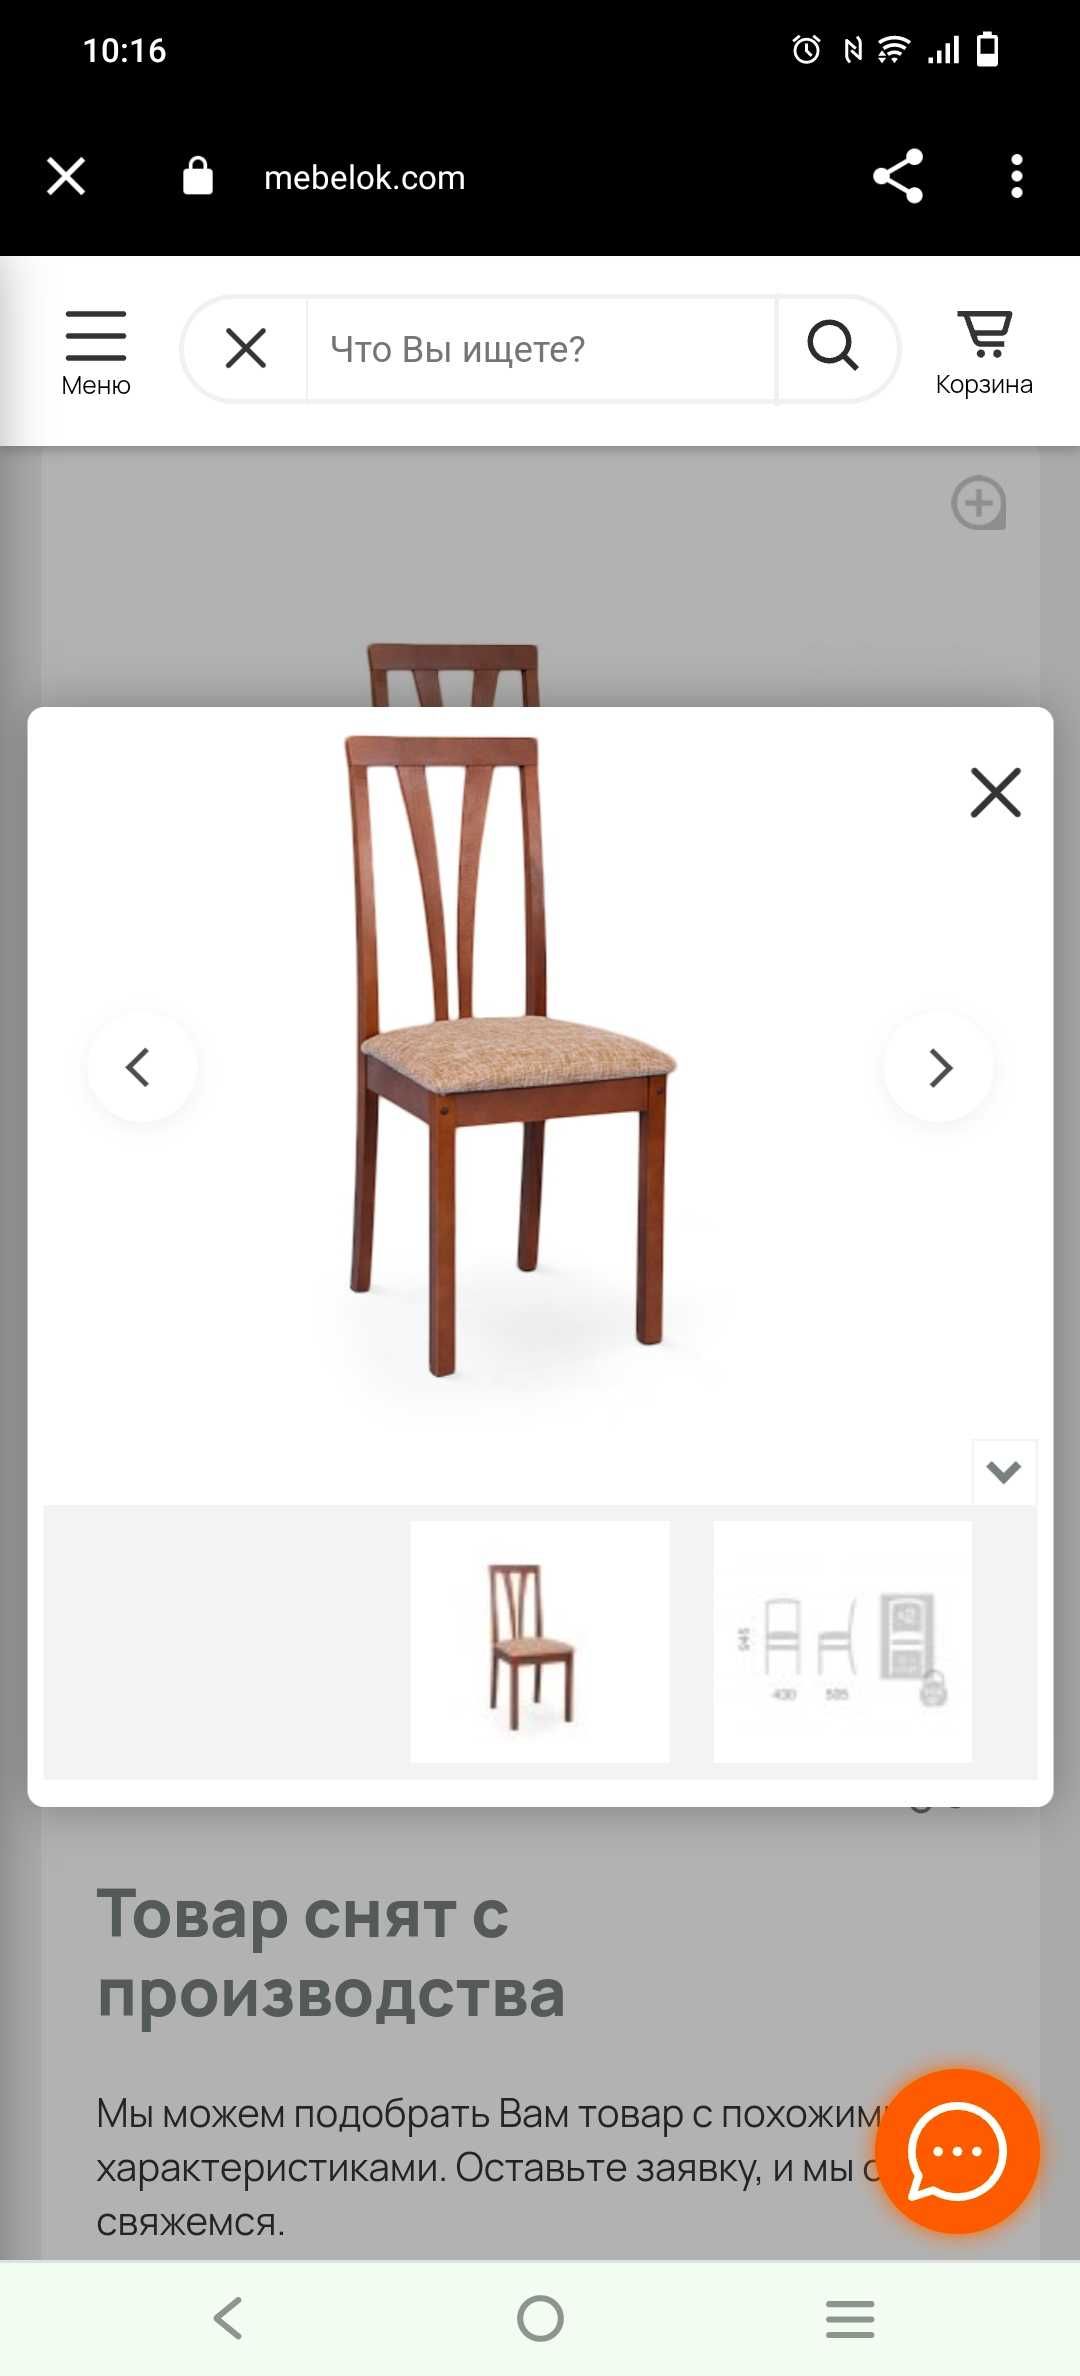 стул с деревянной спинкой и мягким сиденьем 4шт 15тгx4=60тг,